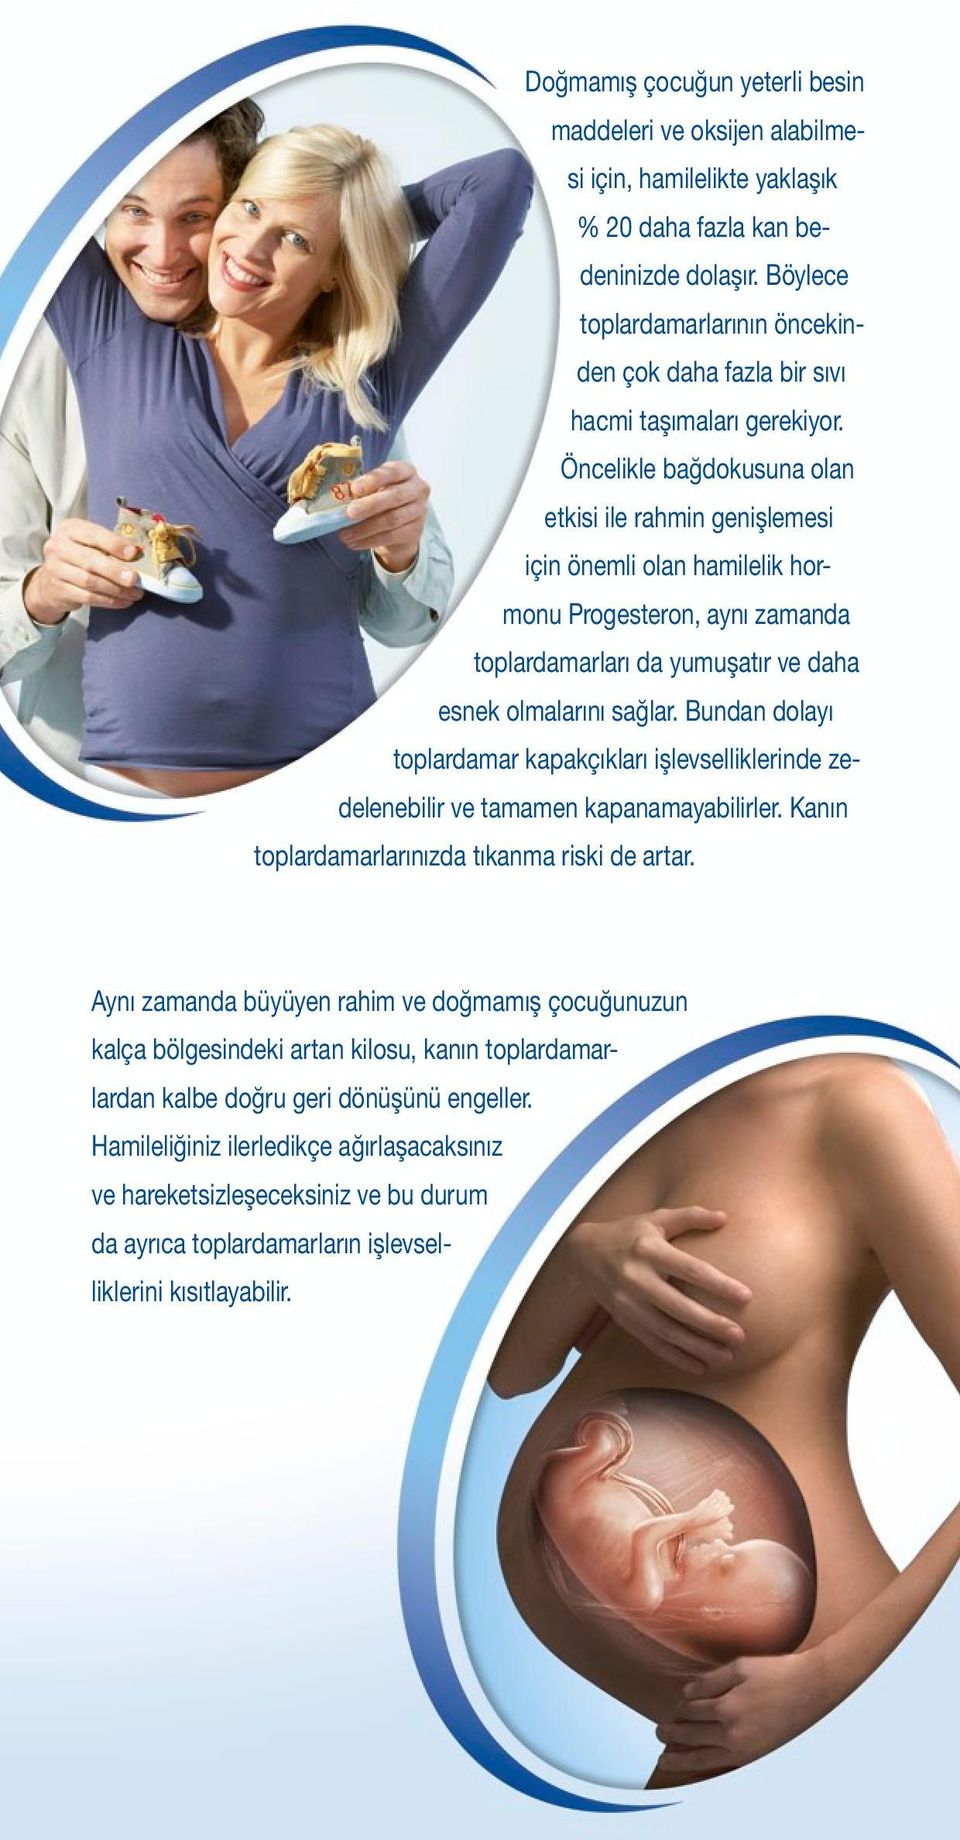 Öncelikle bağdokusuna olan etkisi ile rahmin genişlemesi için önemli olan hamilelik hormonu Progesteron, aynı zamanda toplardamarları da yumuşatır ve daha esnek olmalarını sağlar.